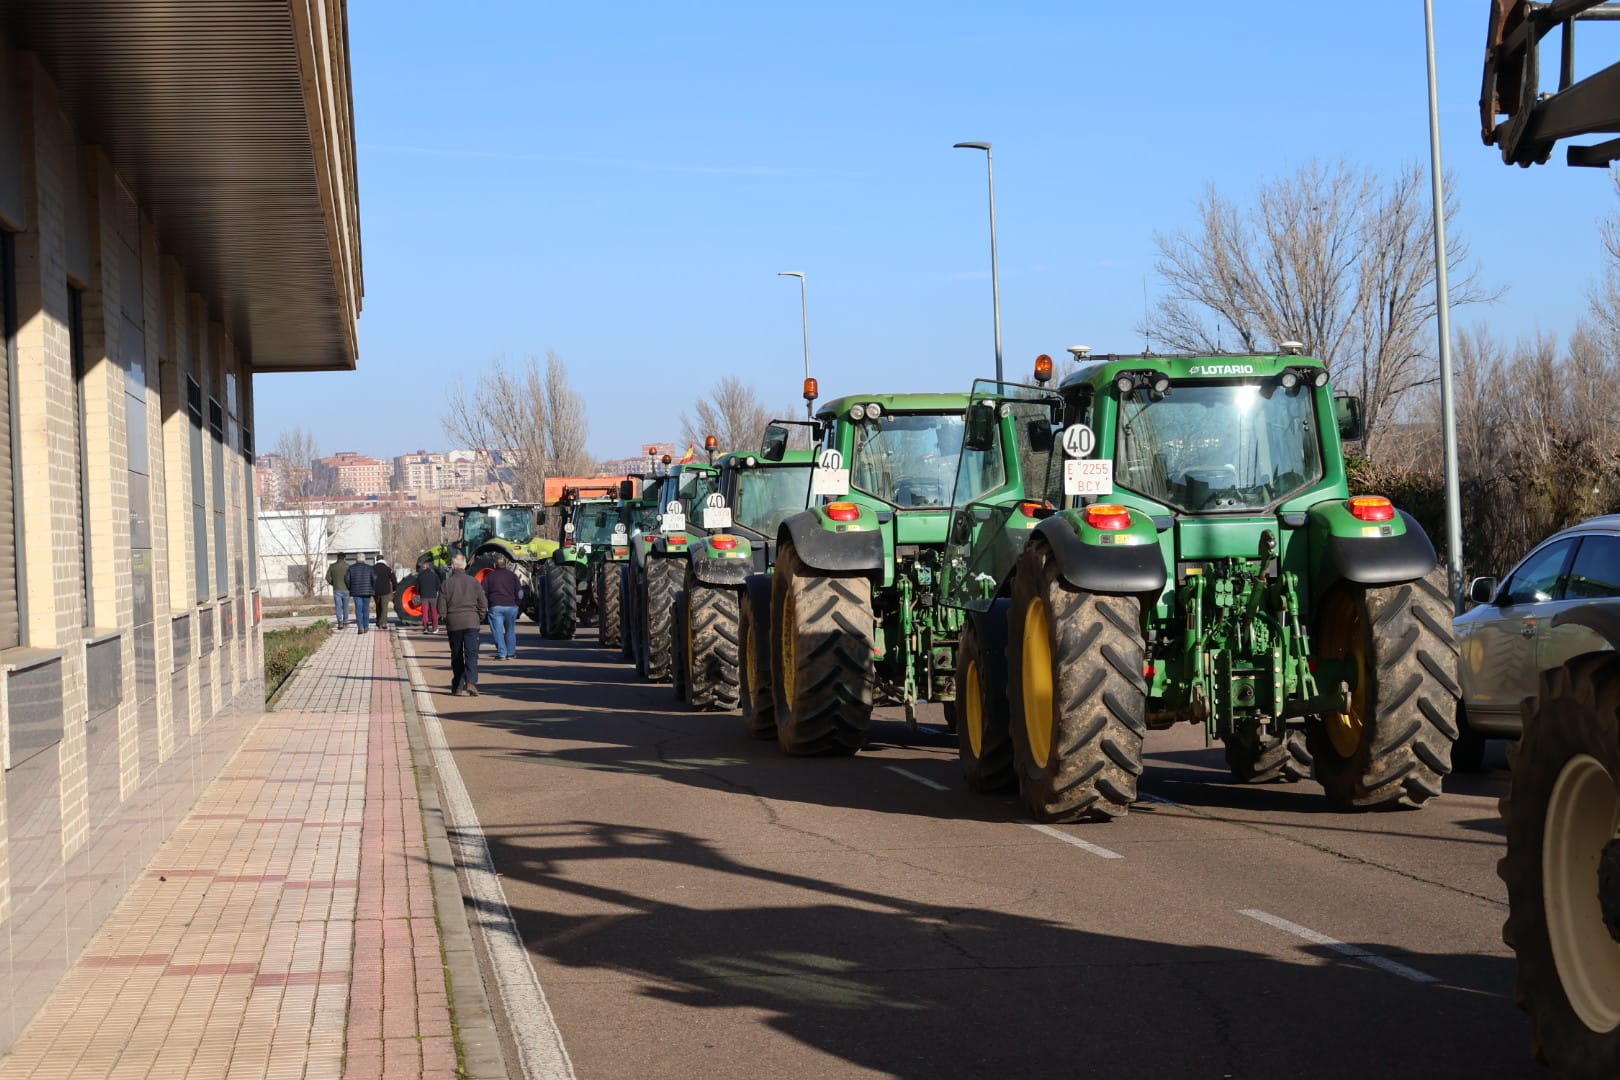 Protesta de los agricultores y ganaderos en Salamanca, viernes, 2 de febrero. Fotos Andrea M (12)